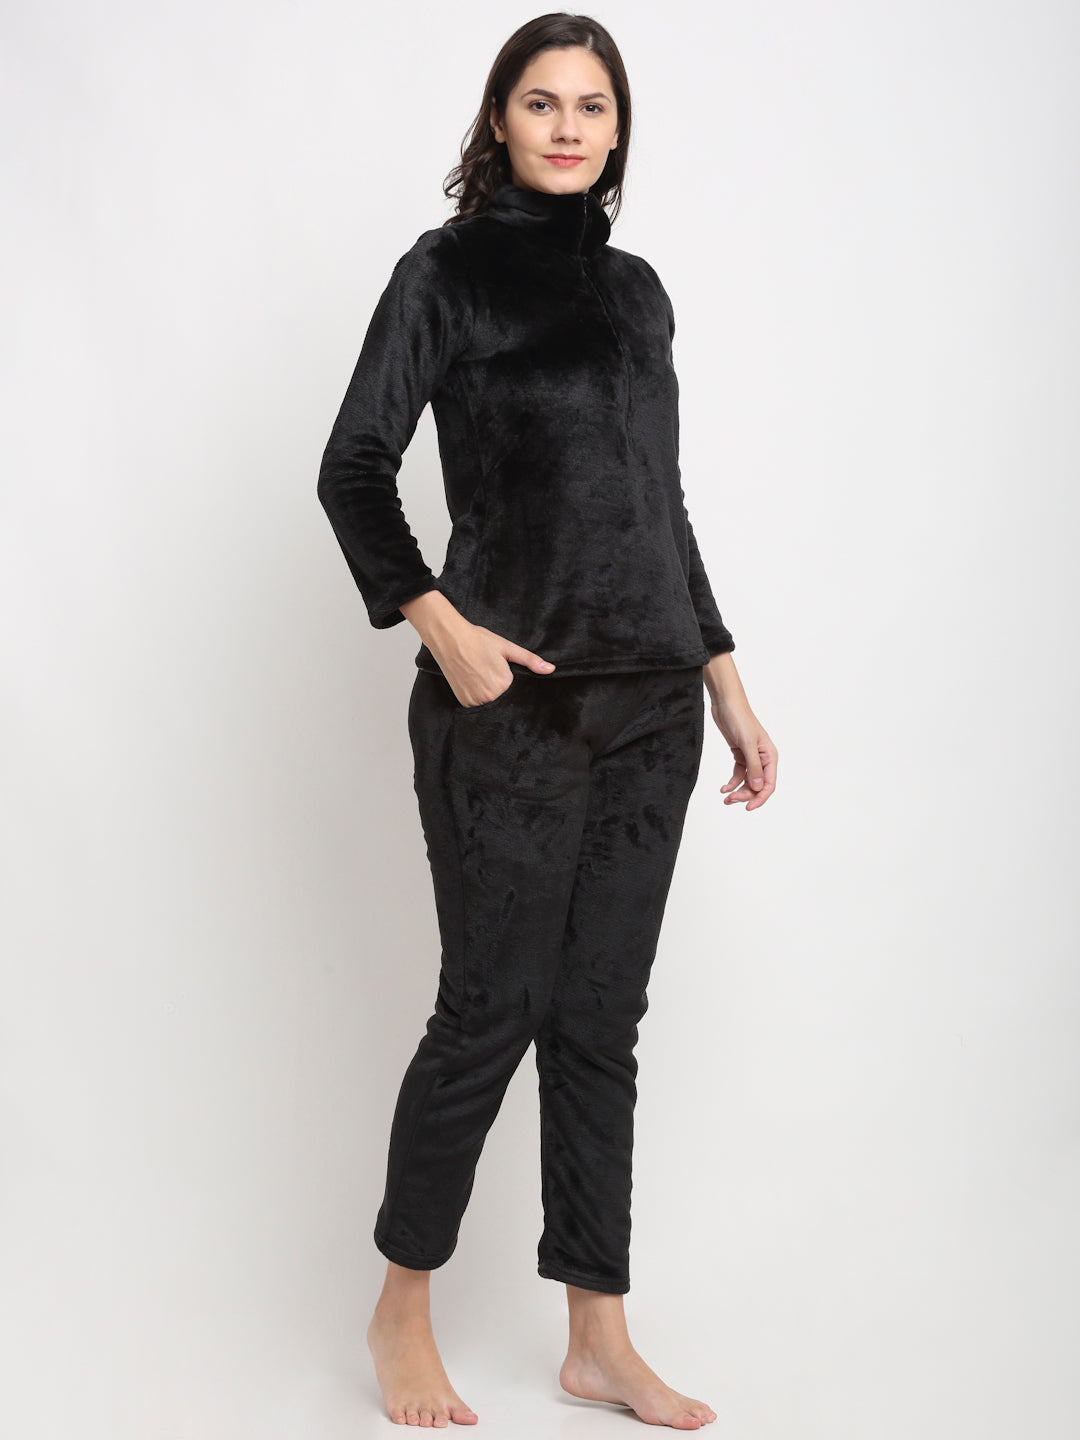 MJKAW21482A-Super Soft Fur-Winterwear